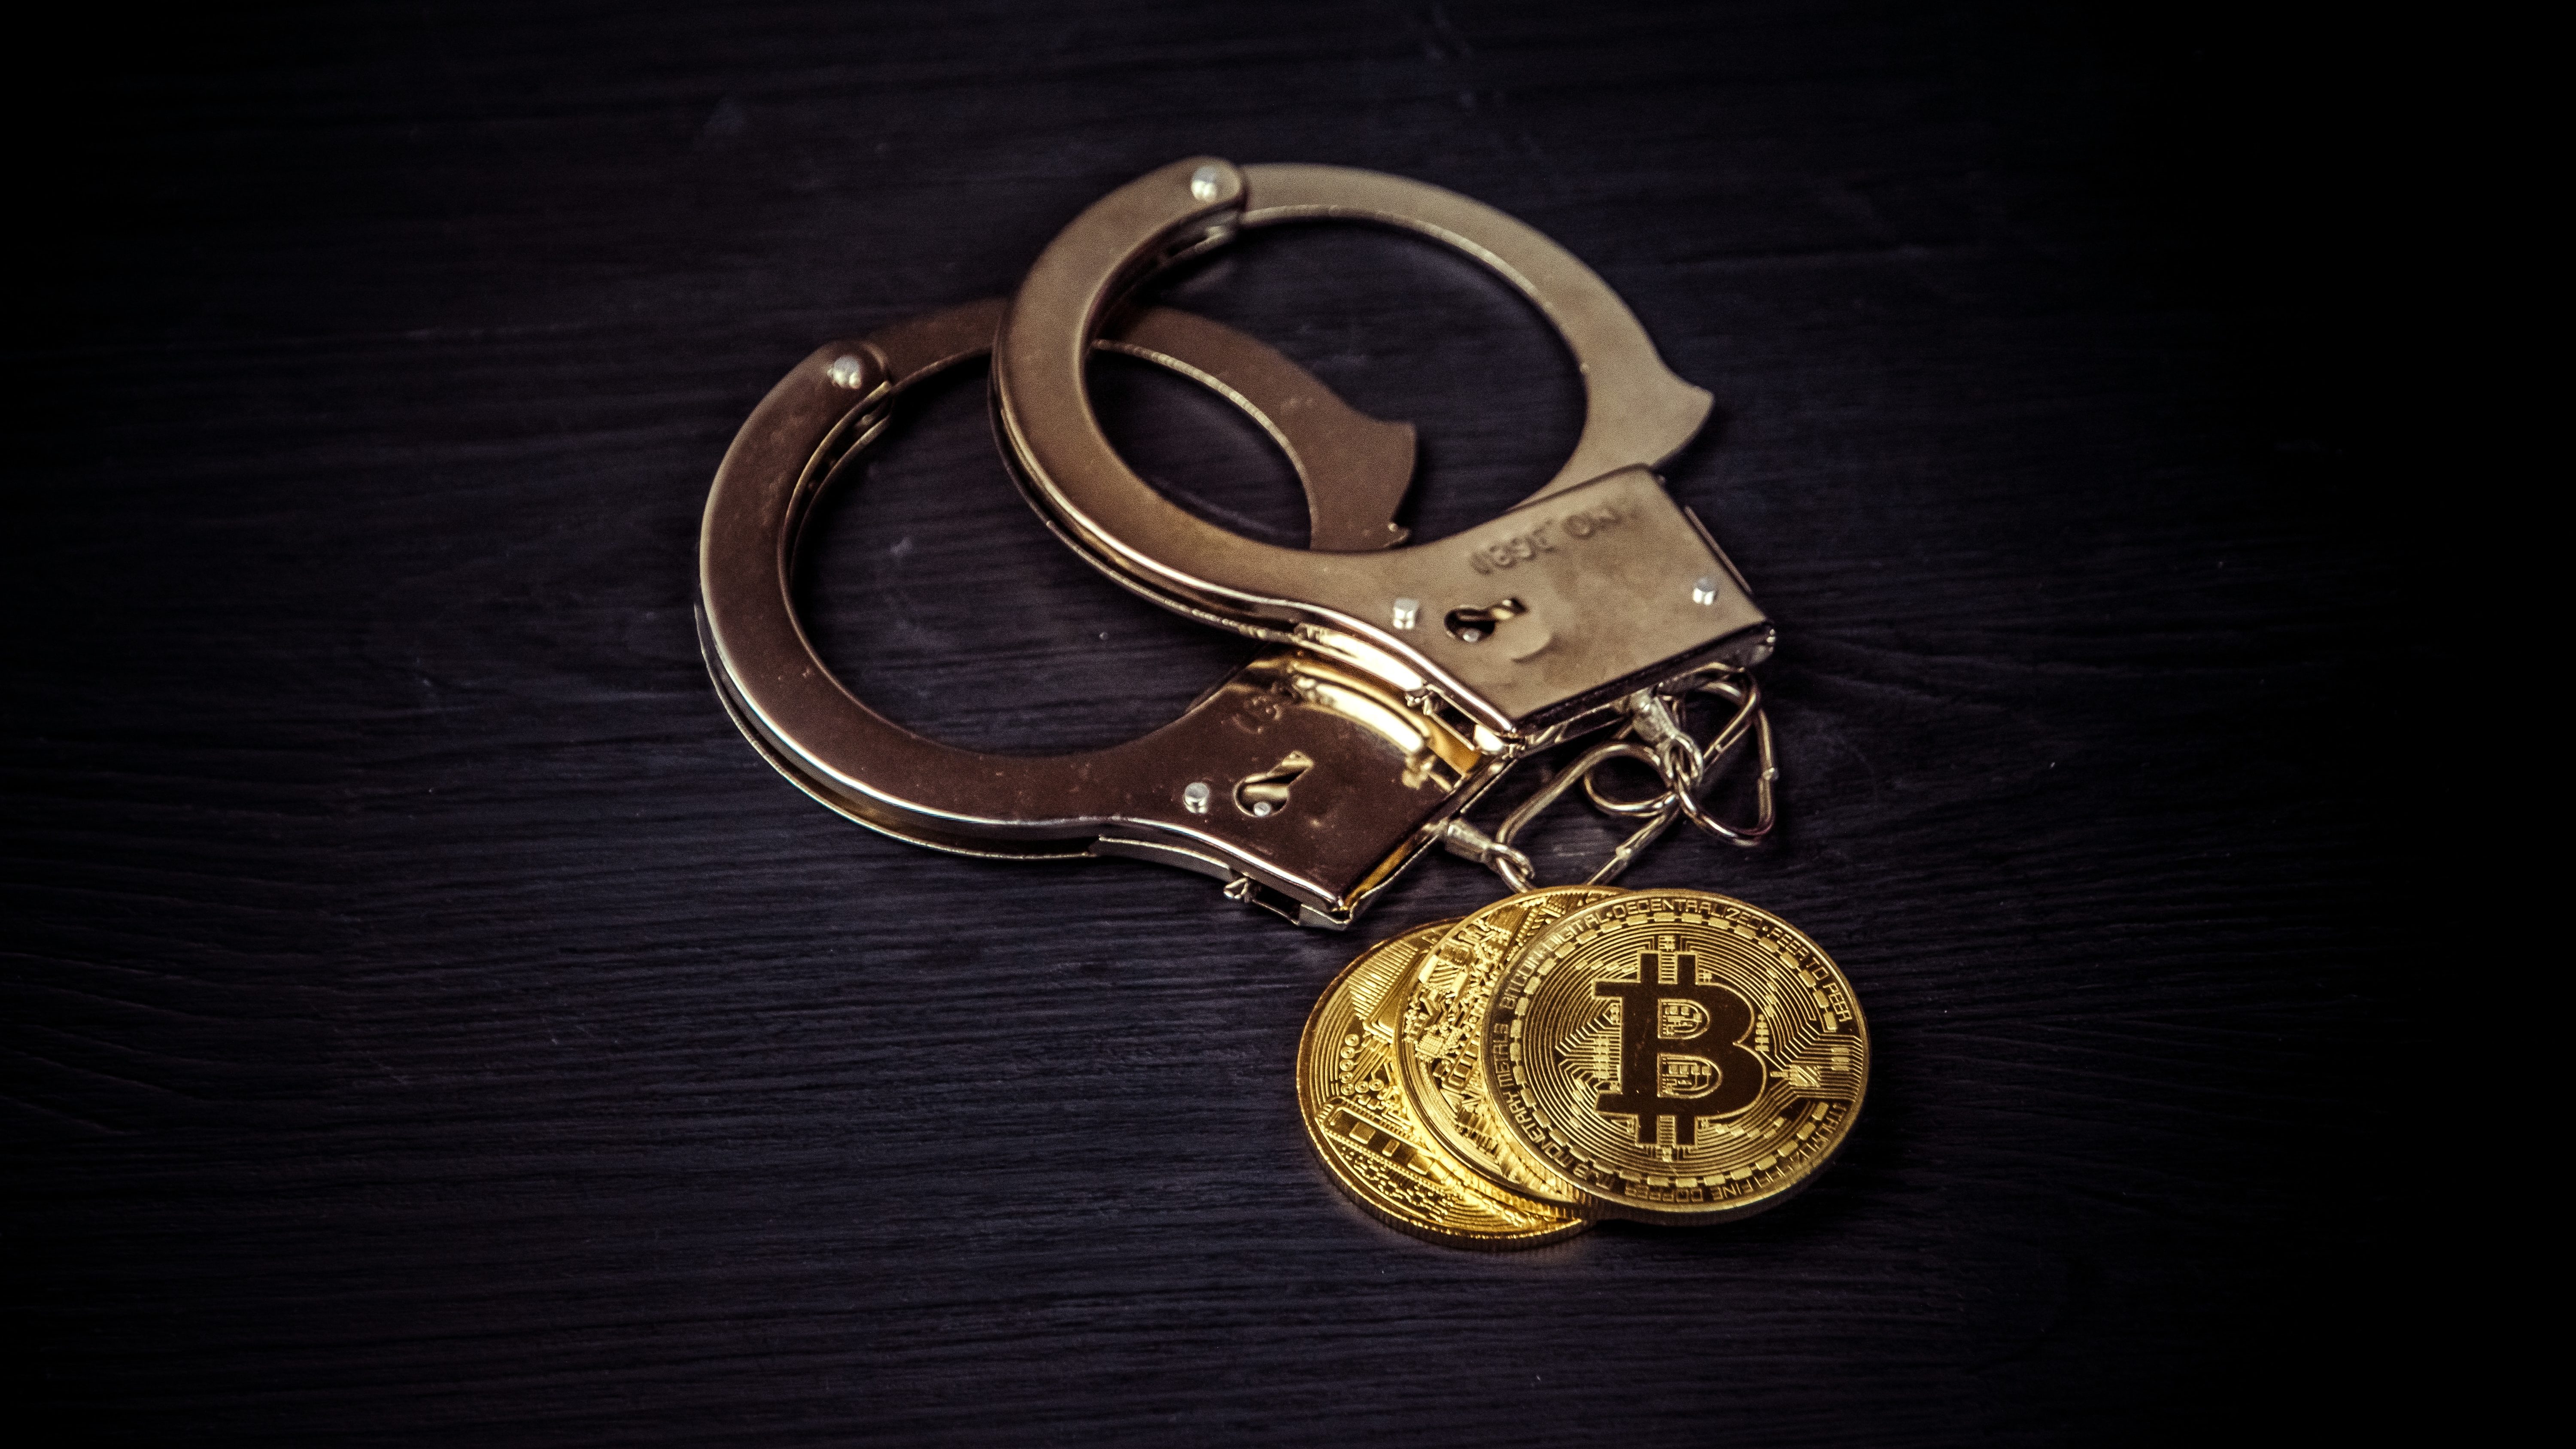 Dono de empresa de bitcoin é preso no RJ acusado de operar pirâmide | Finanças